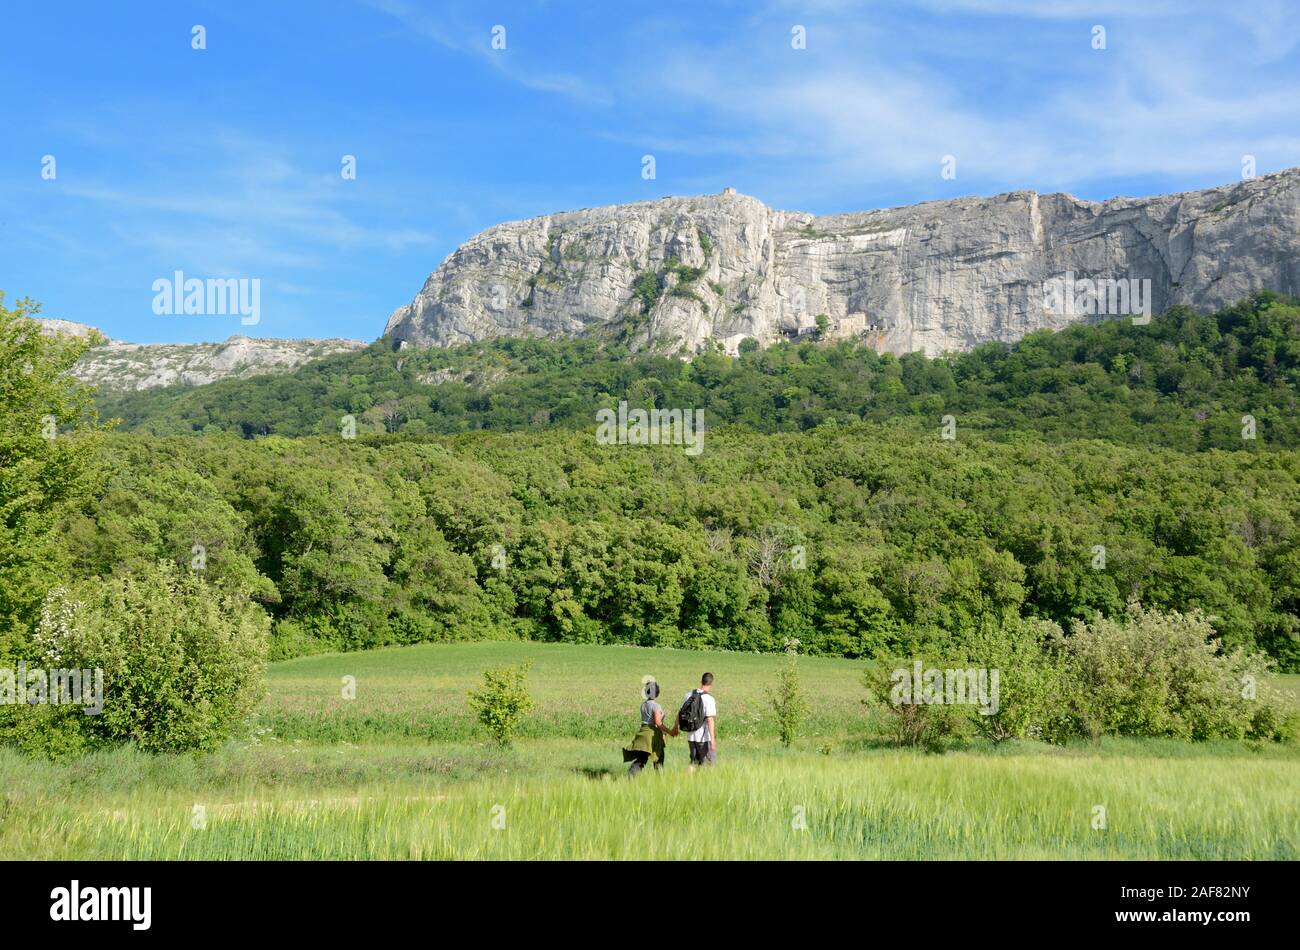 Dos excursionistas o turistas que caminan por la senda en la Cordillera de Sainte-Baume, Parc naturel régional, o Reserva Natural Bosque Beechwood Provence Francia Foto de stock